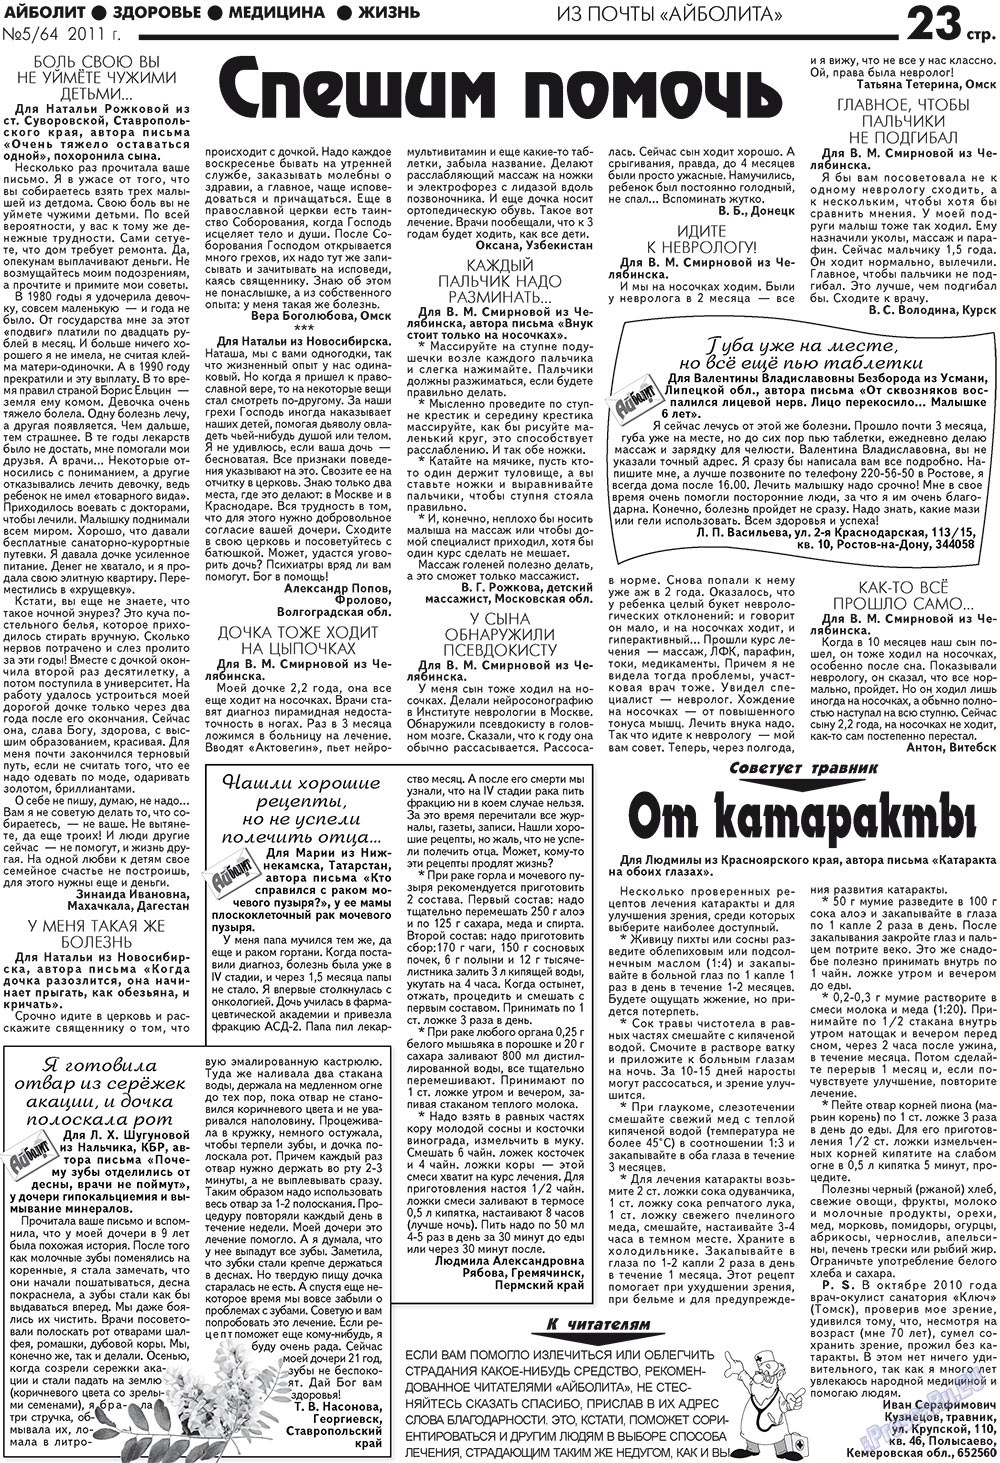 АйБолит, газета. 2011 №5 стр.23